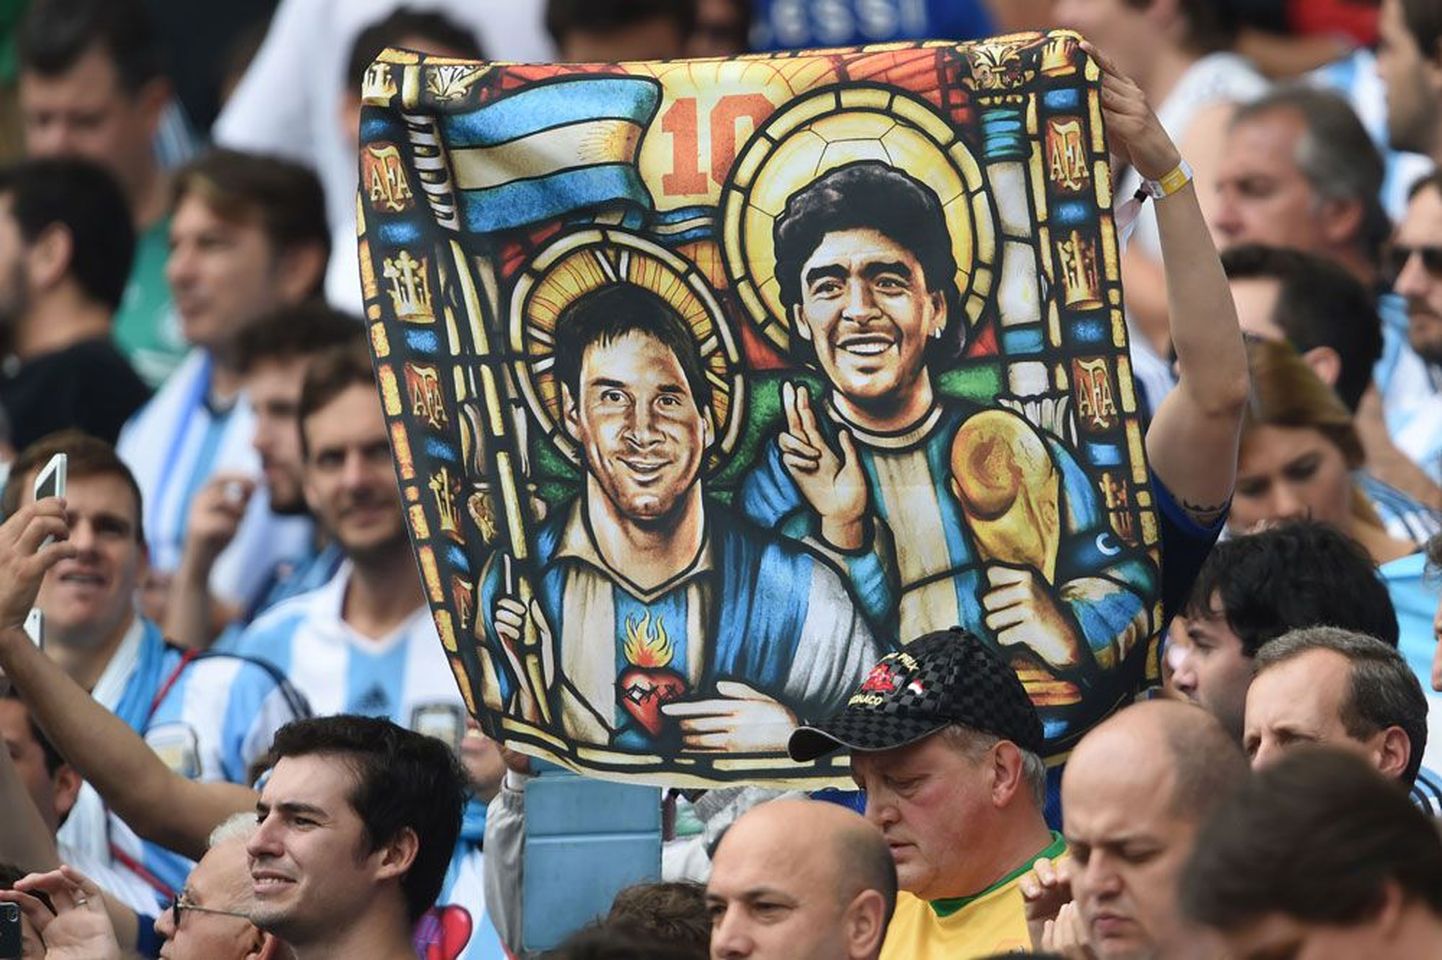 Argentina jalgpalli kaks ikooni Lionel Messi ja Diego Maradona. Kui Maradona viis argentiinlased 1986. aastal MM-tiitlini, siis praeguselt sangarilt Messilt oodatakse samasugust triumfi tänavu.